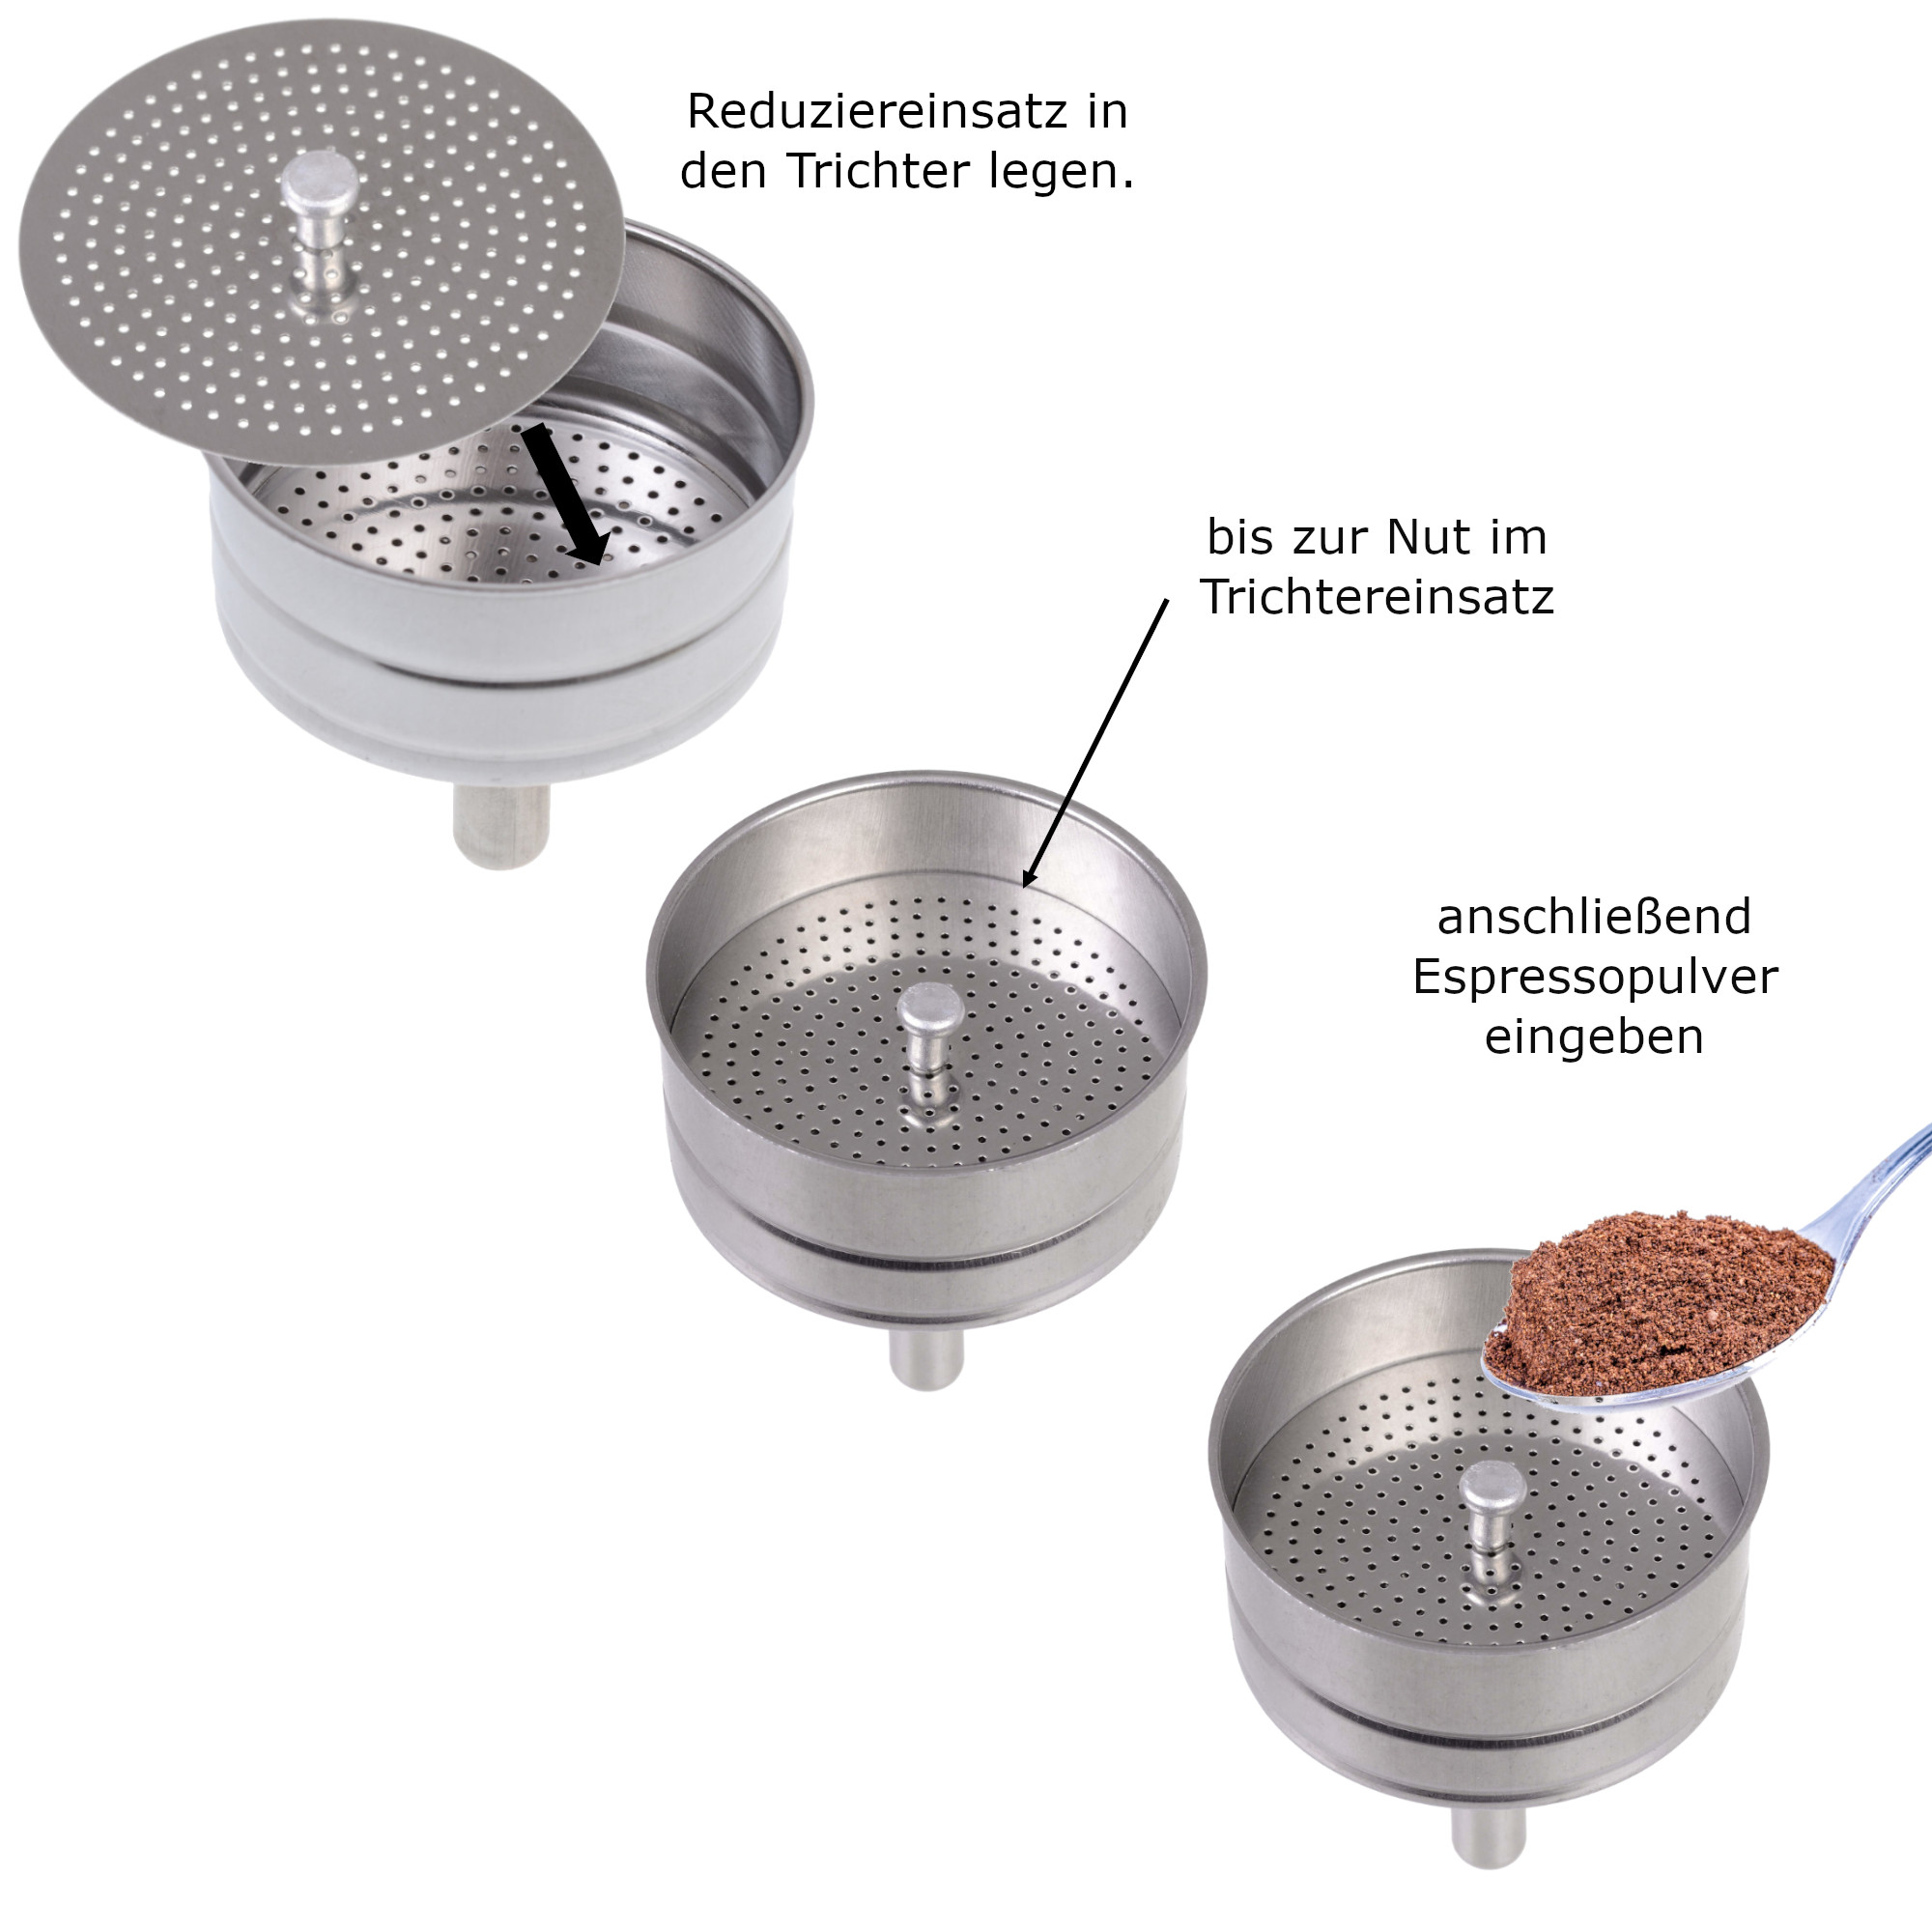 Reduziereinsatz für Espressokocher mit Edelstahl-Kanne 10 Tassen